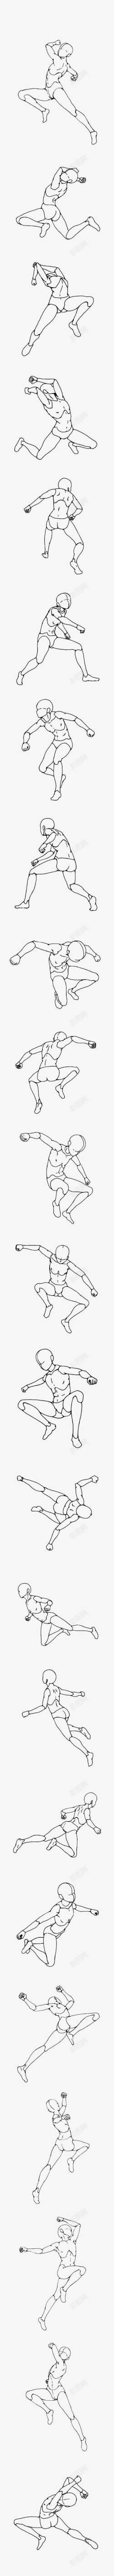 达芬奇人体比例多角度立体机动姿势集高清图片